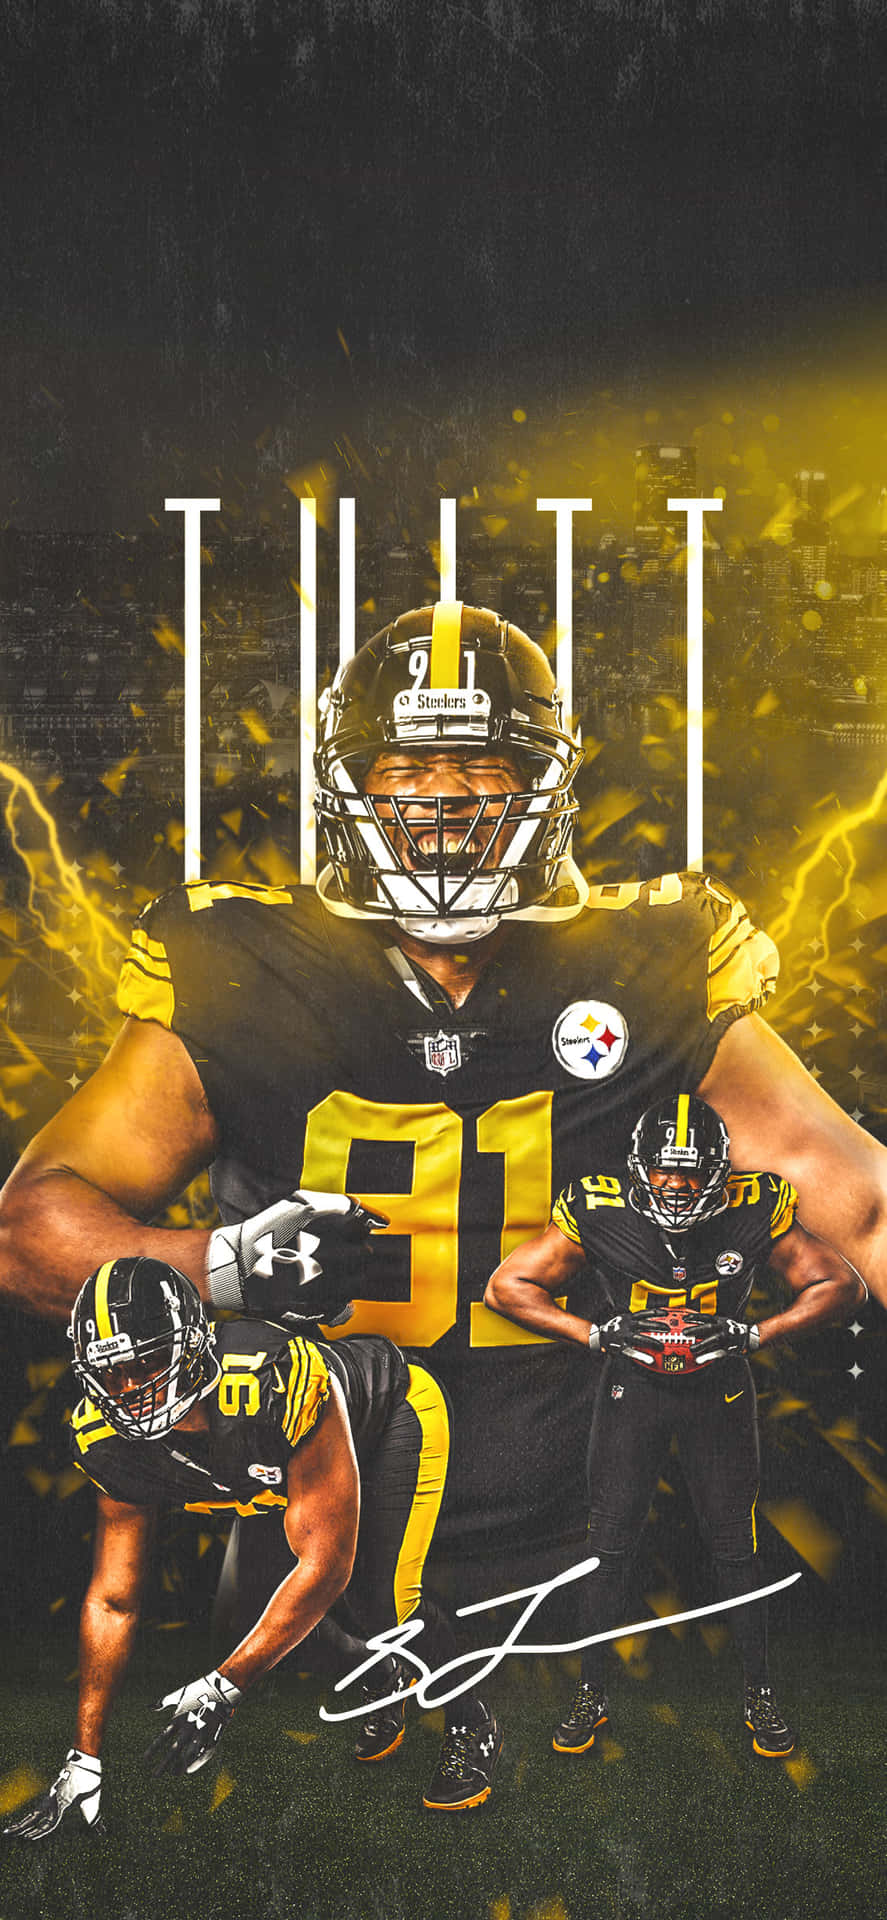 !Vis din Steelers-stolthed overalt, du går! Wallpaper